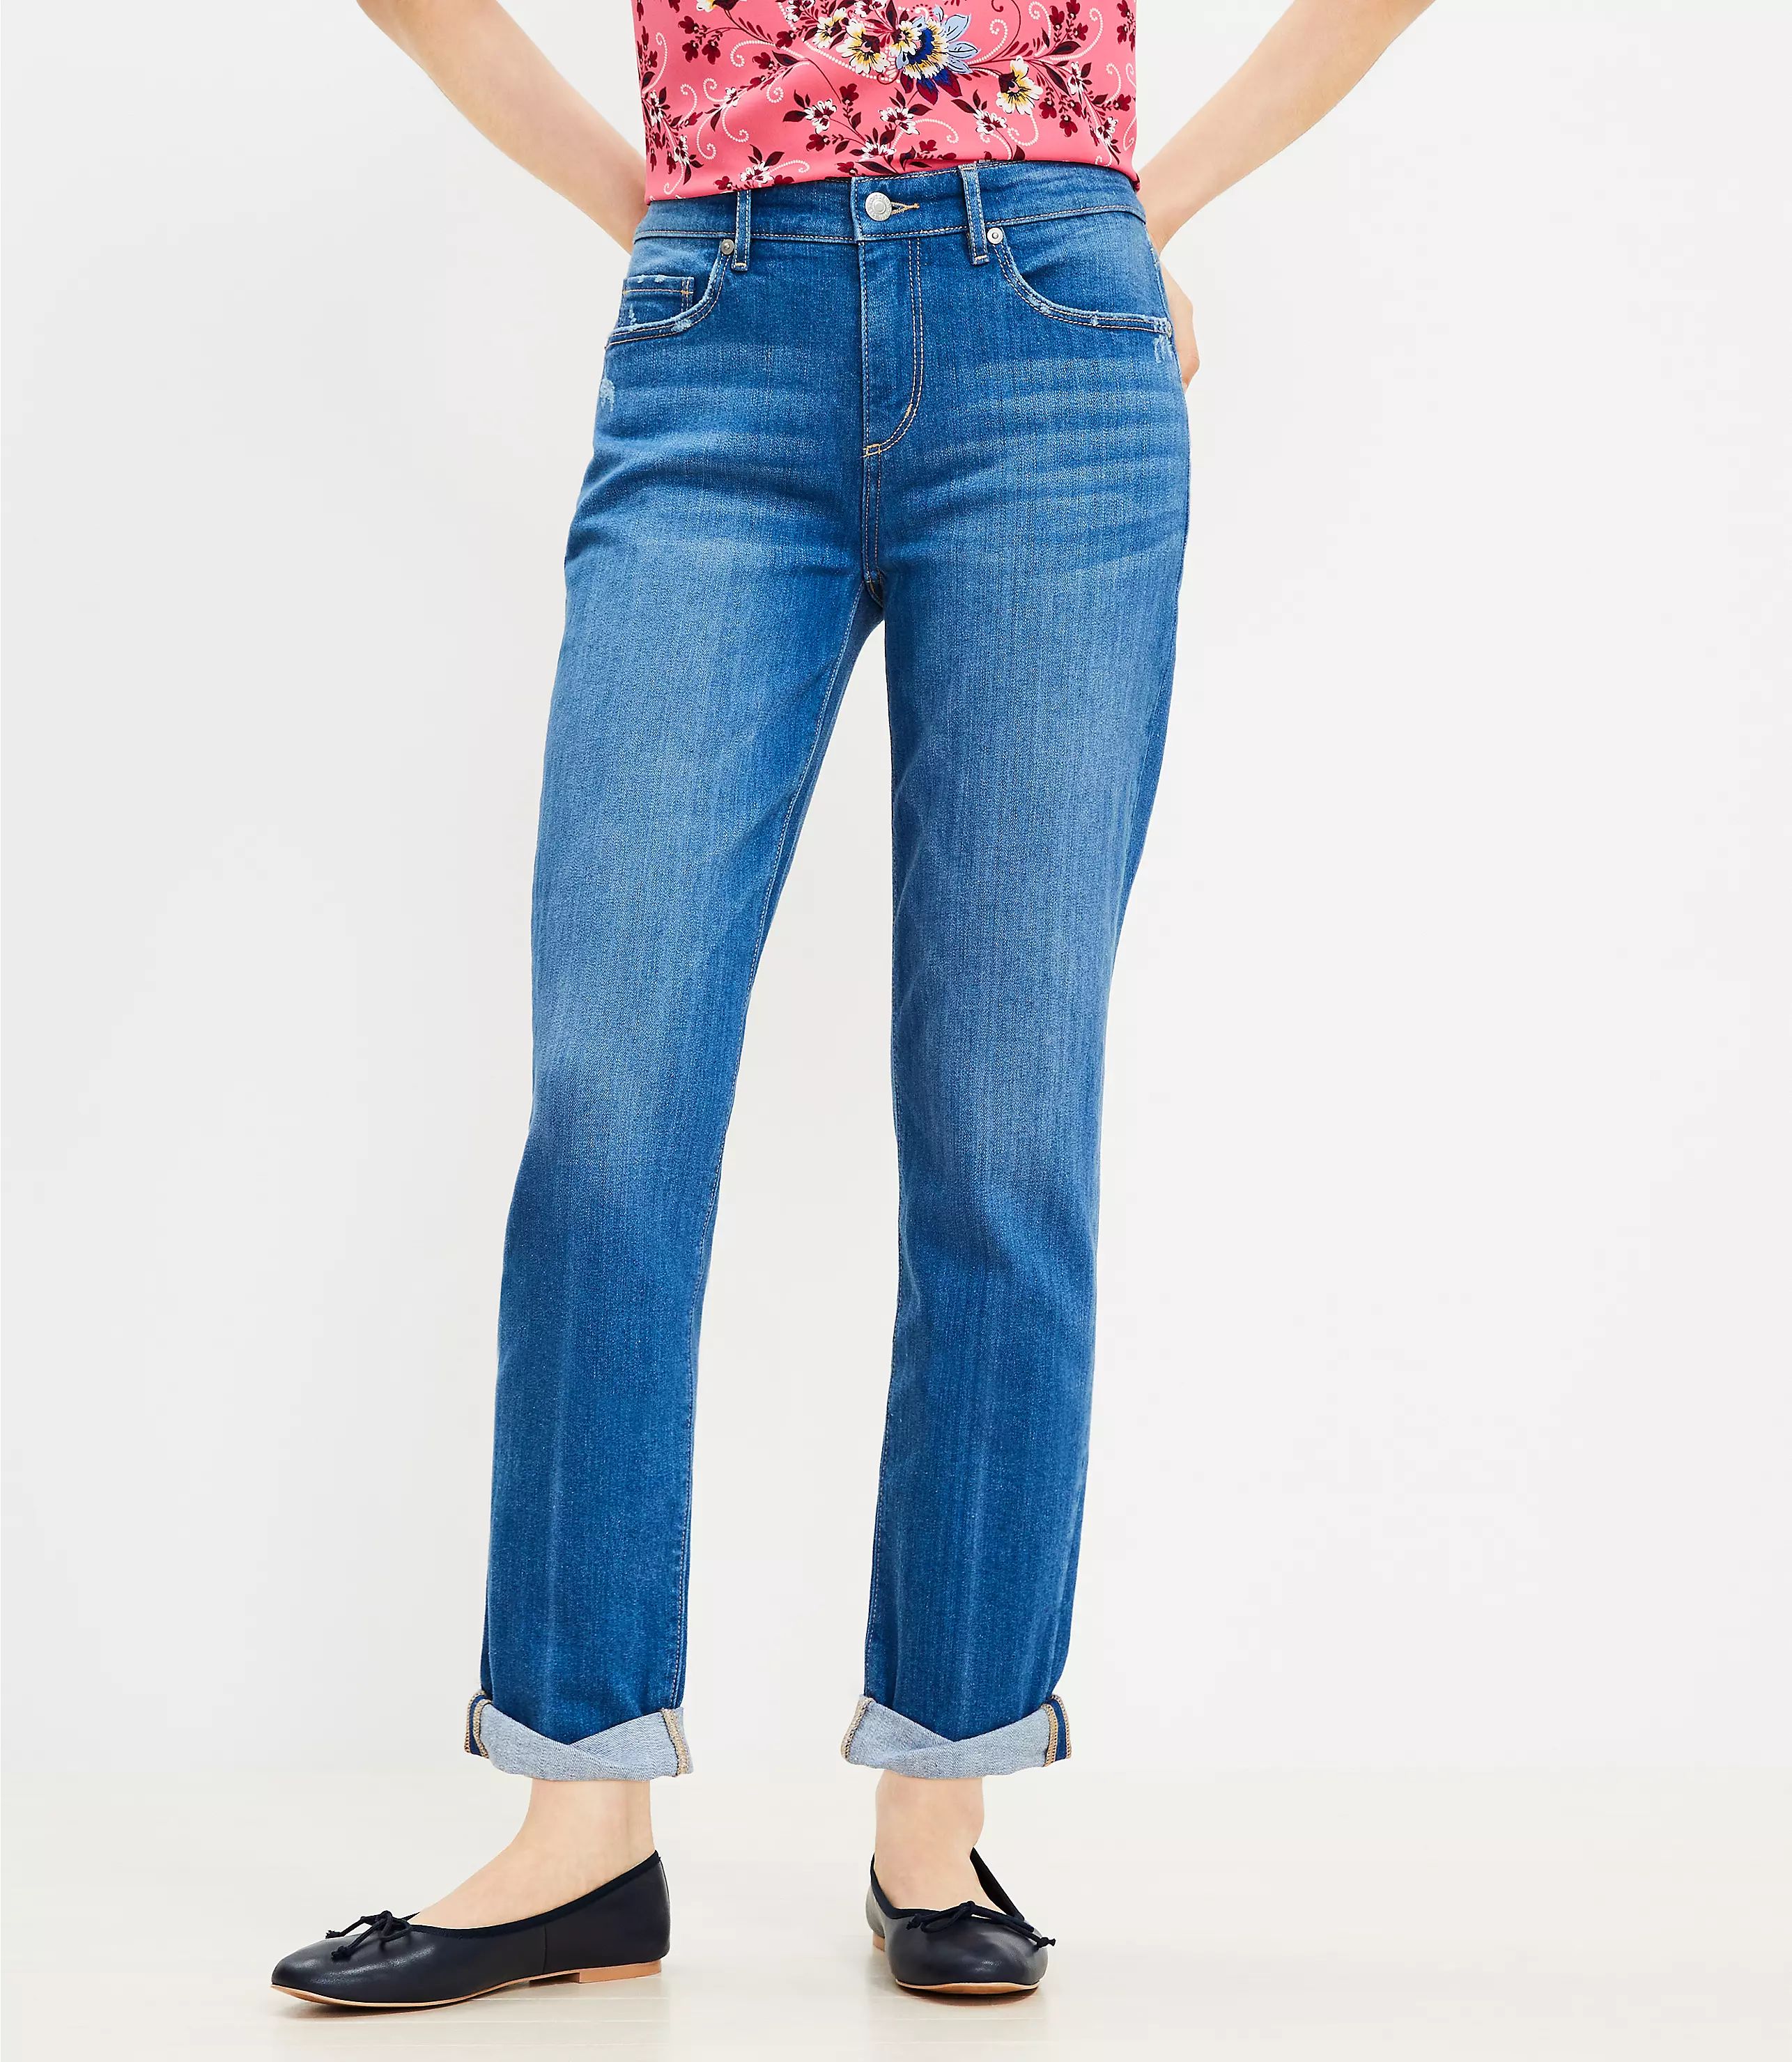 Super Soft Girlfriend Jeans in Original Mid Indigo Wash | LOFT